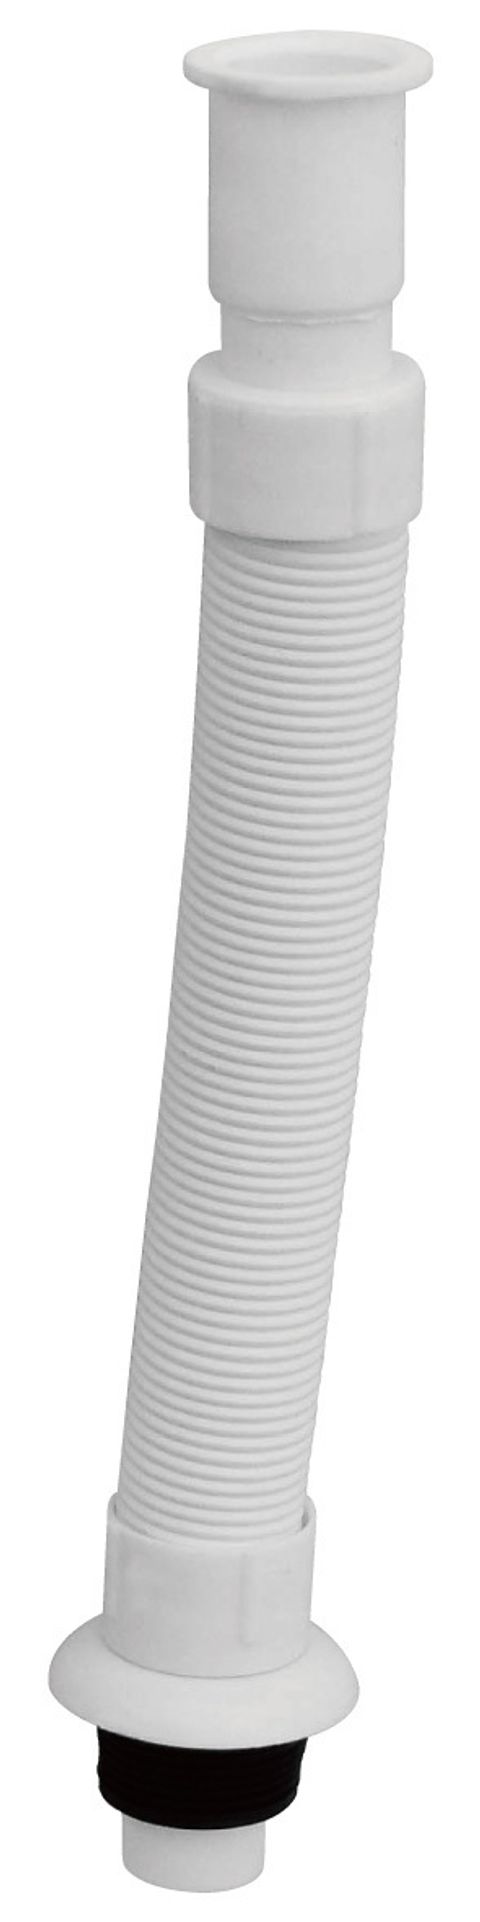 LA06-2714-14米N 專利萬向排水管(白色)